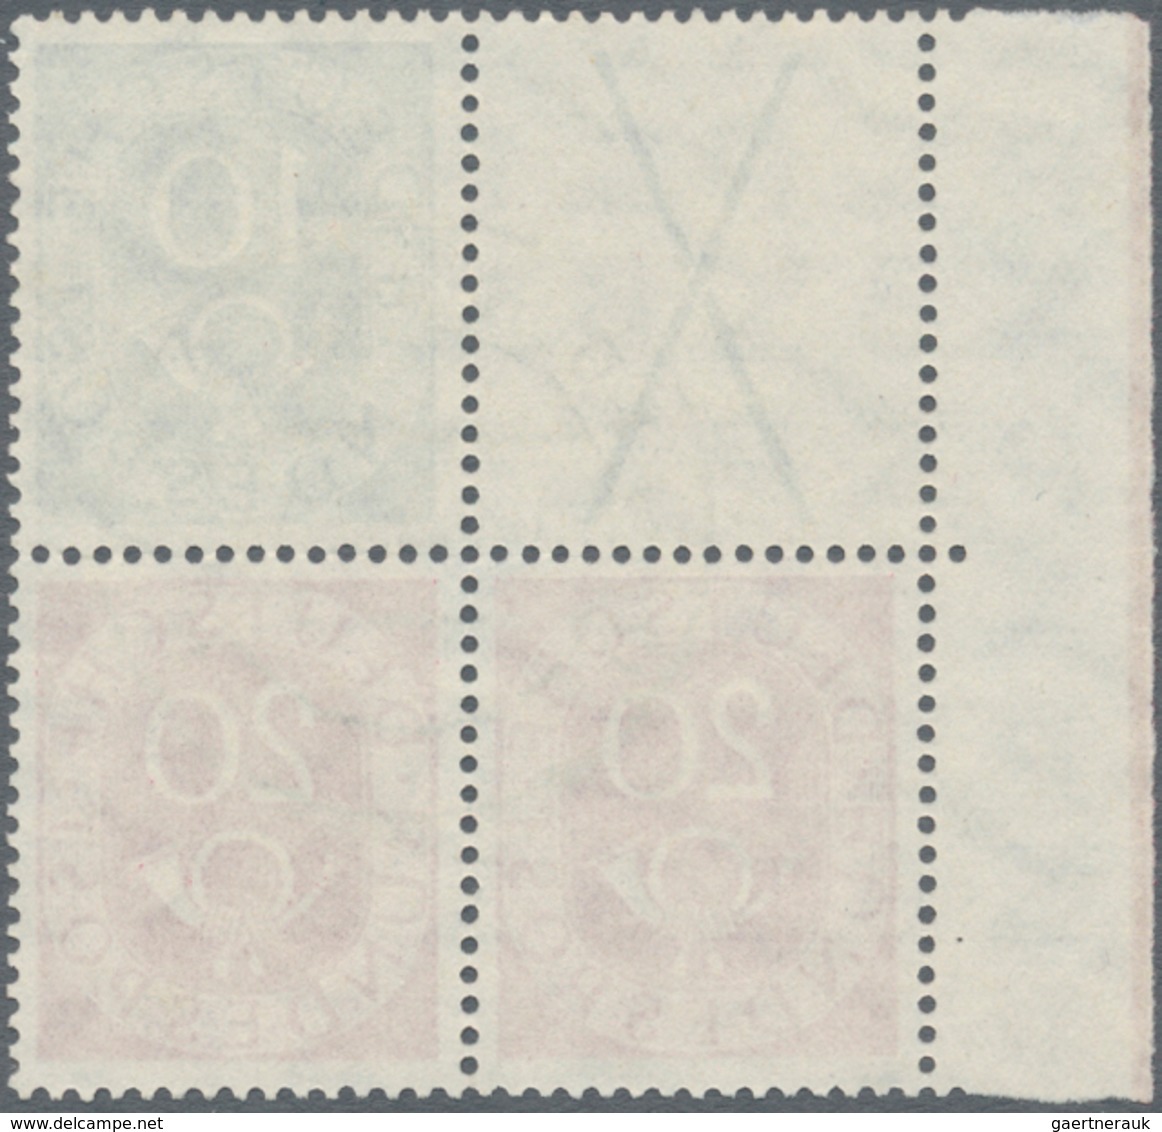 Bundesrepublik - Zusammendrucke: 1951, Posthorn Zusammendruck X/20 Pfg. Und 10/20 Pfg. Als Gestempel - Se-Tenant